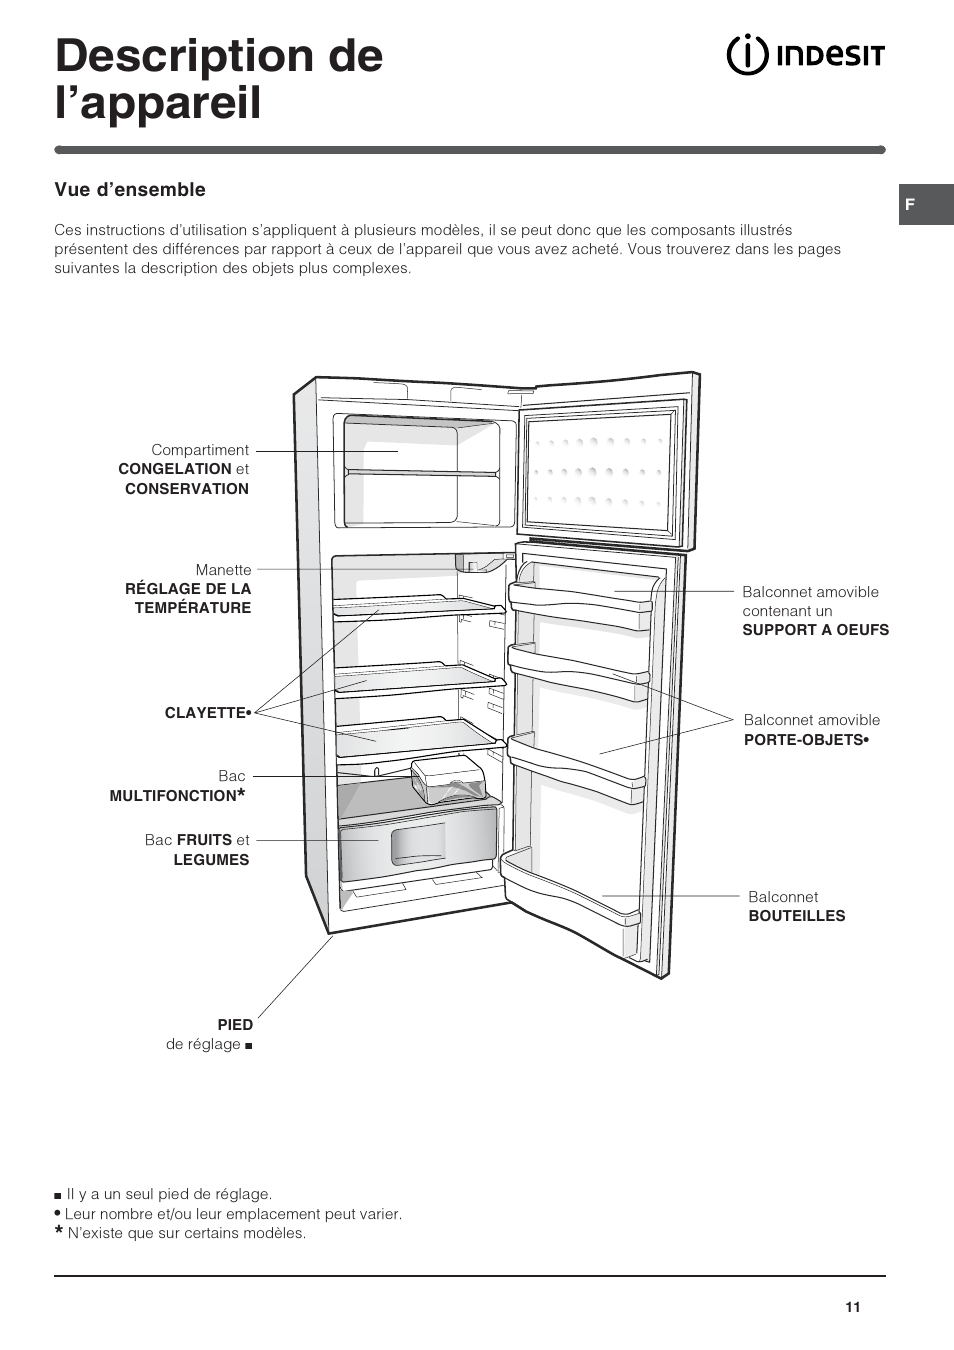 Индезит холодильник с138nfg016 схема